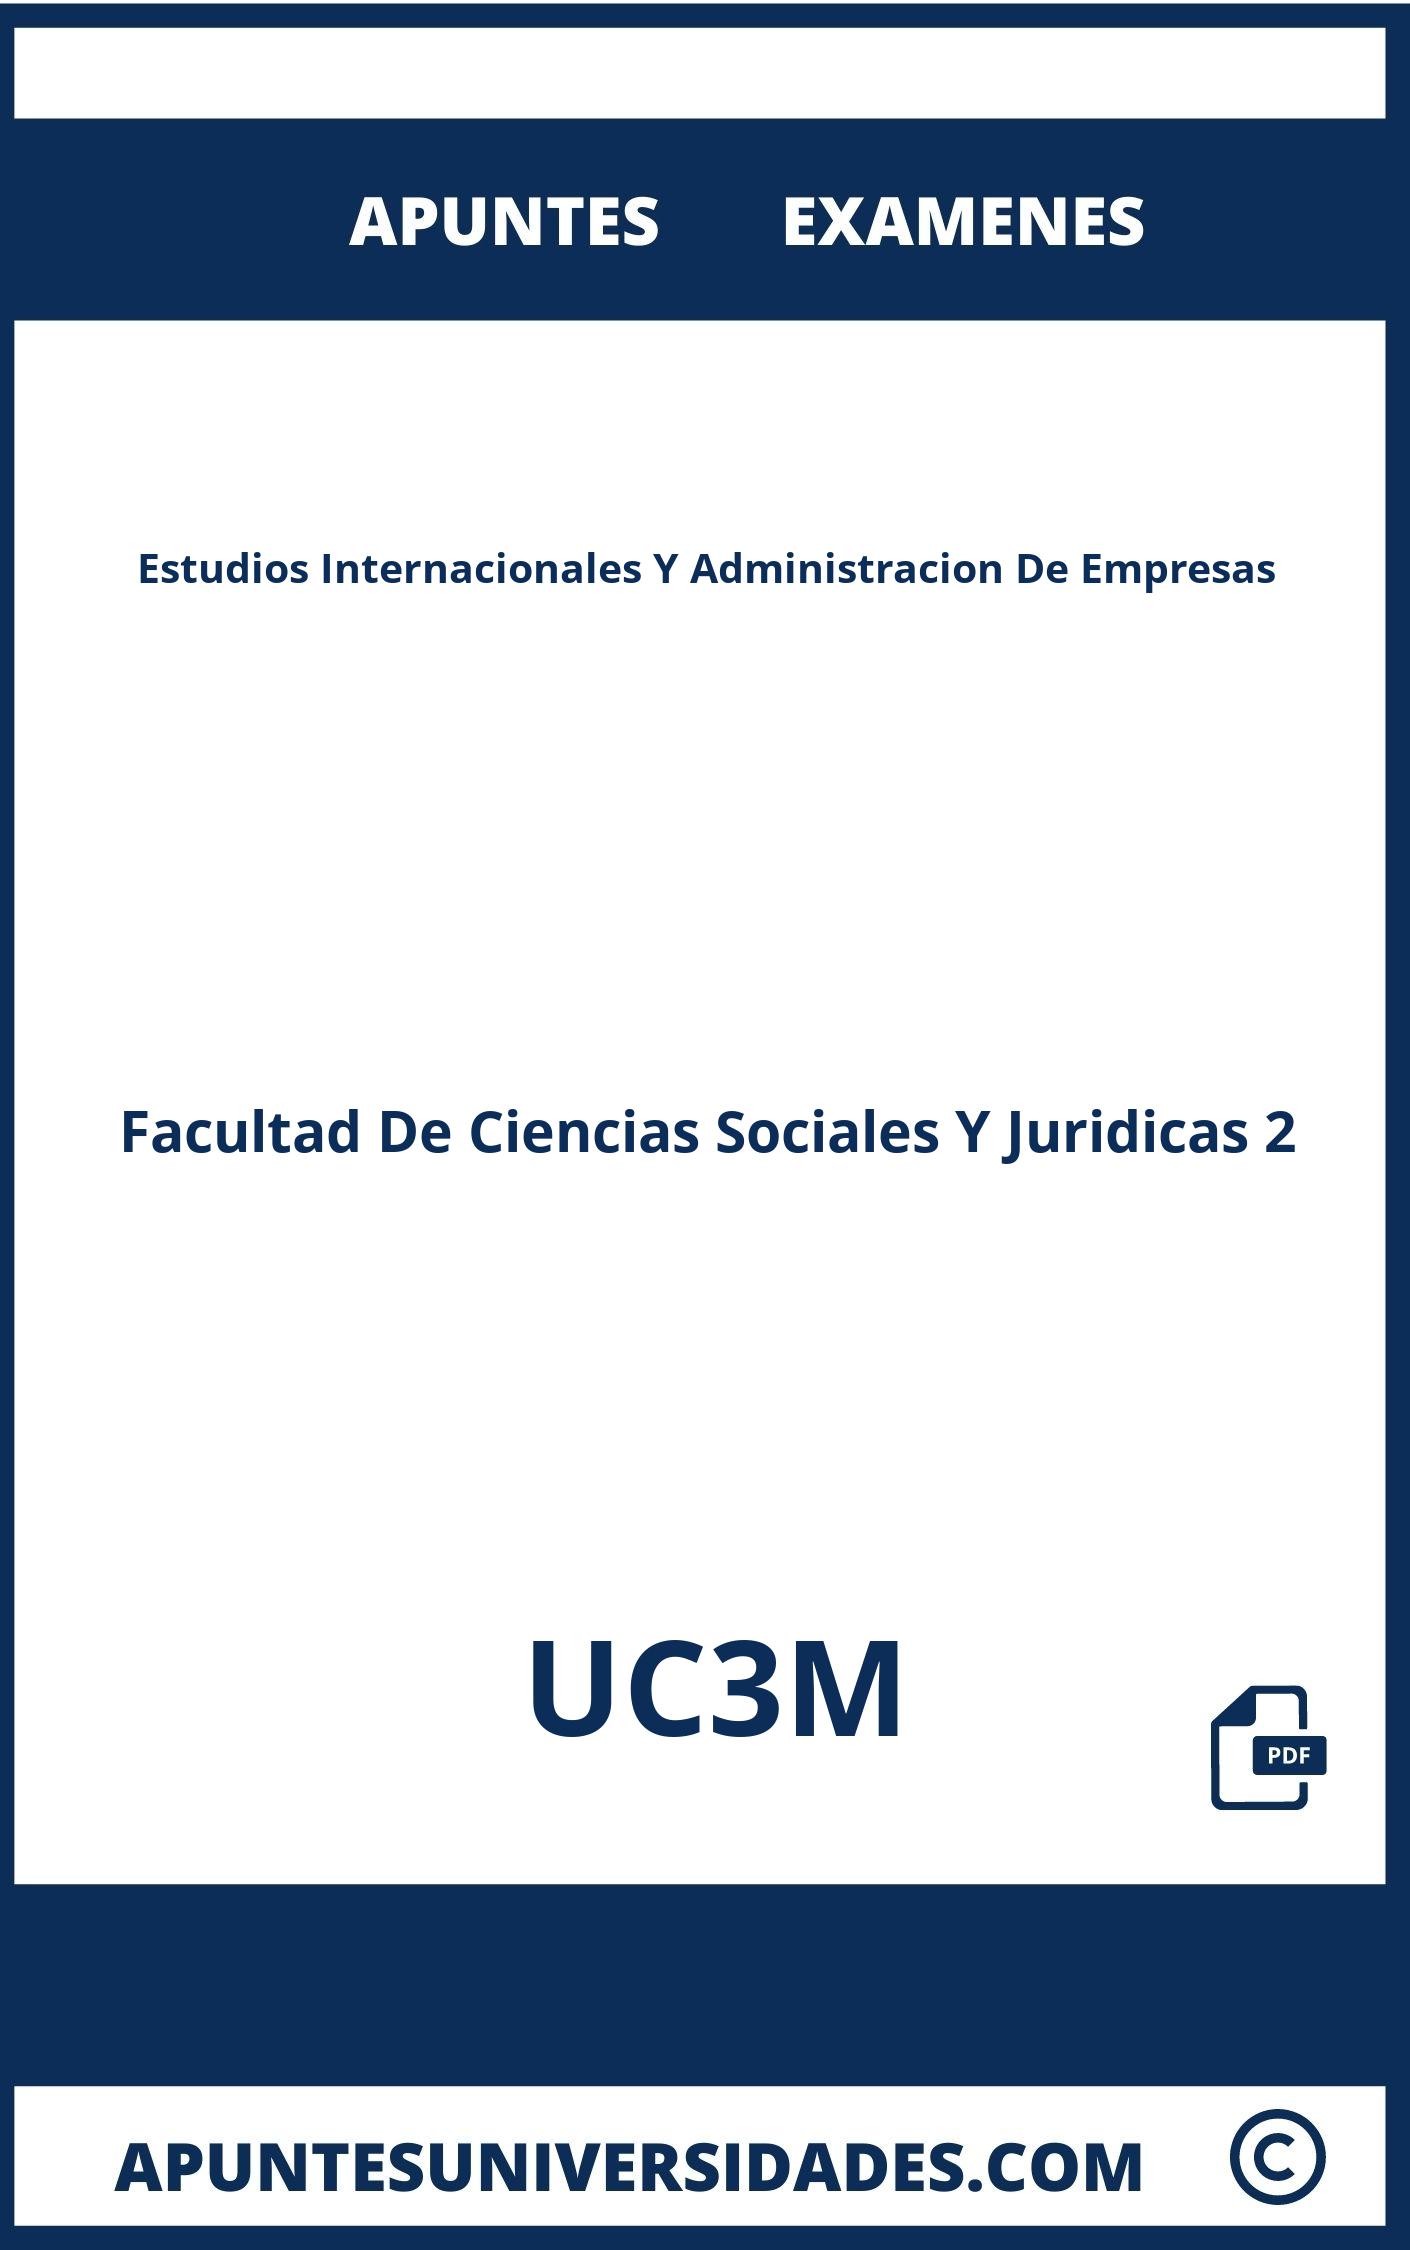 Apuntes y Examenes Estudios Internacionales Y Administracion De Empresas UC3M